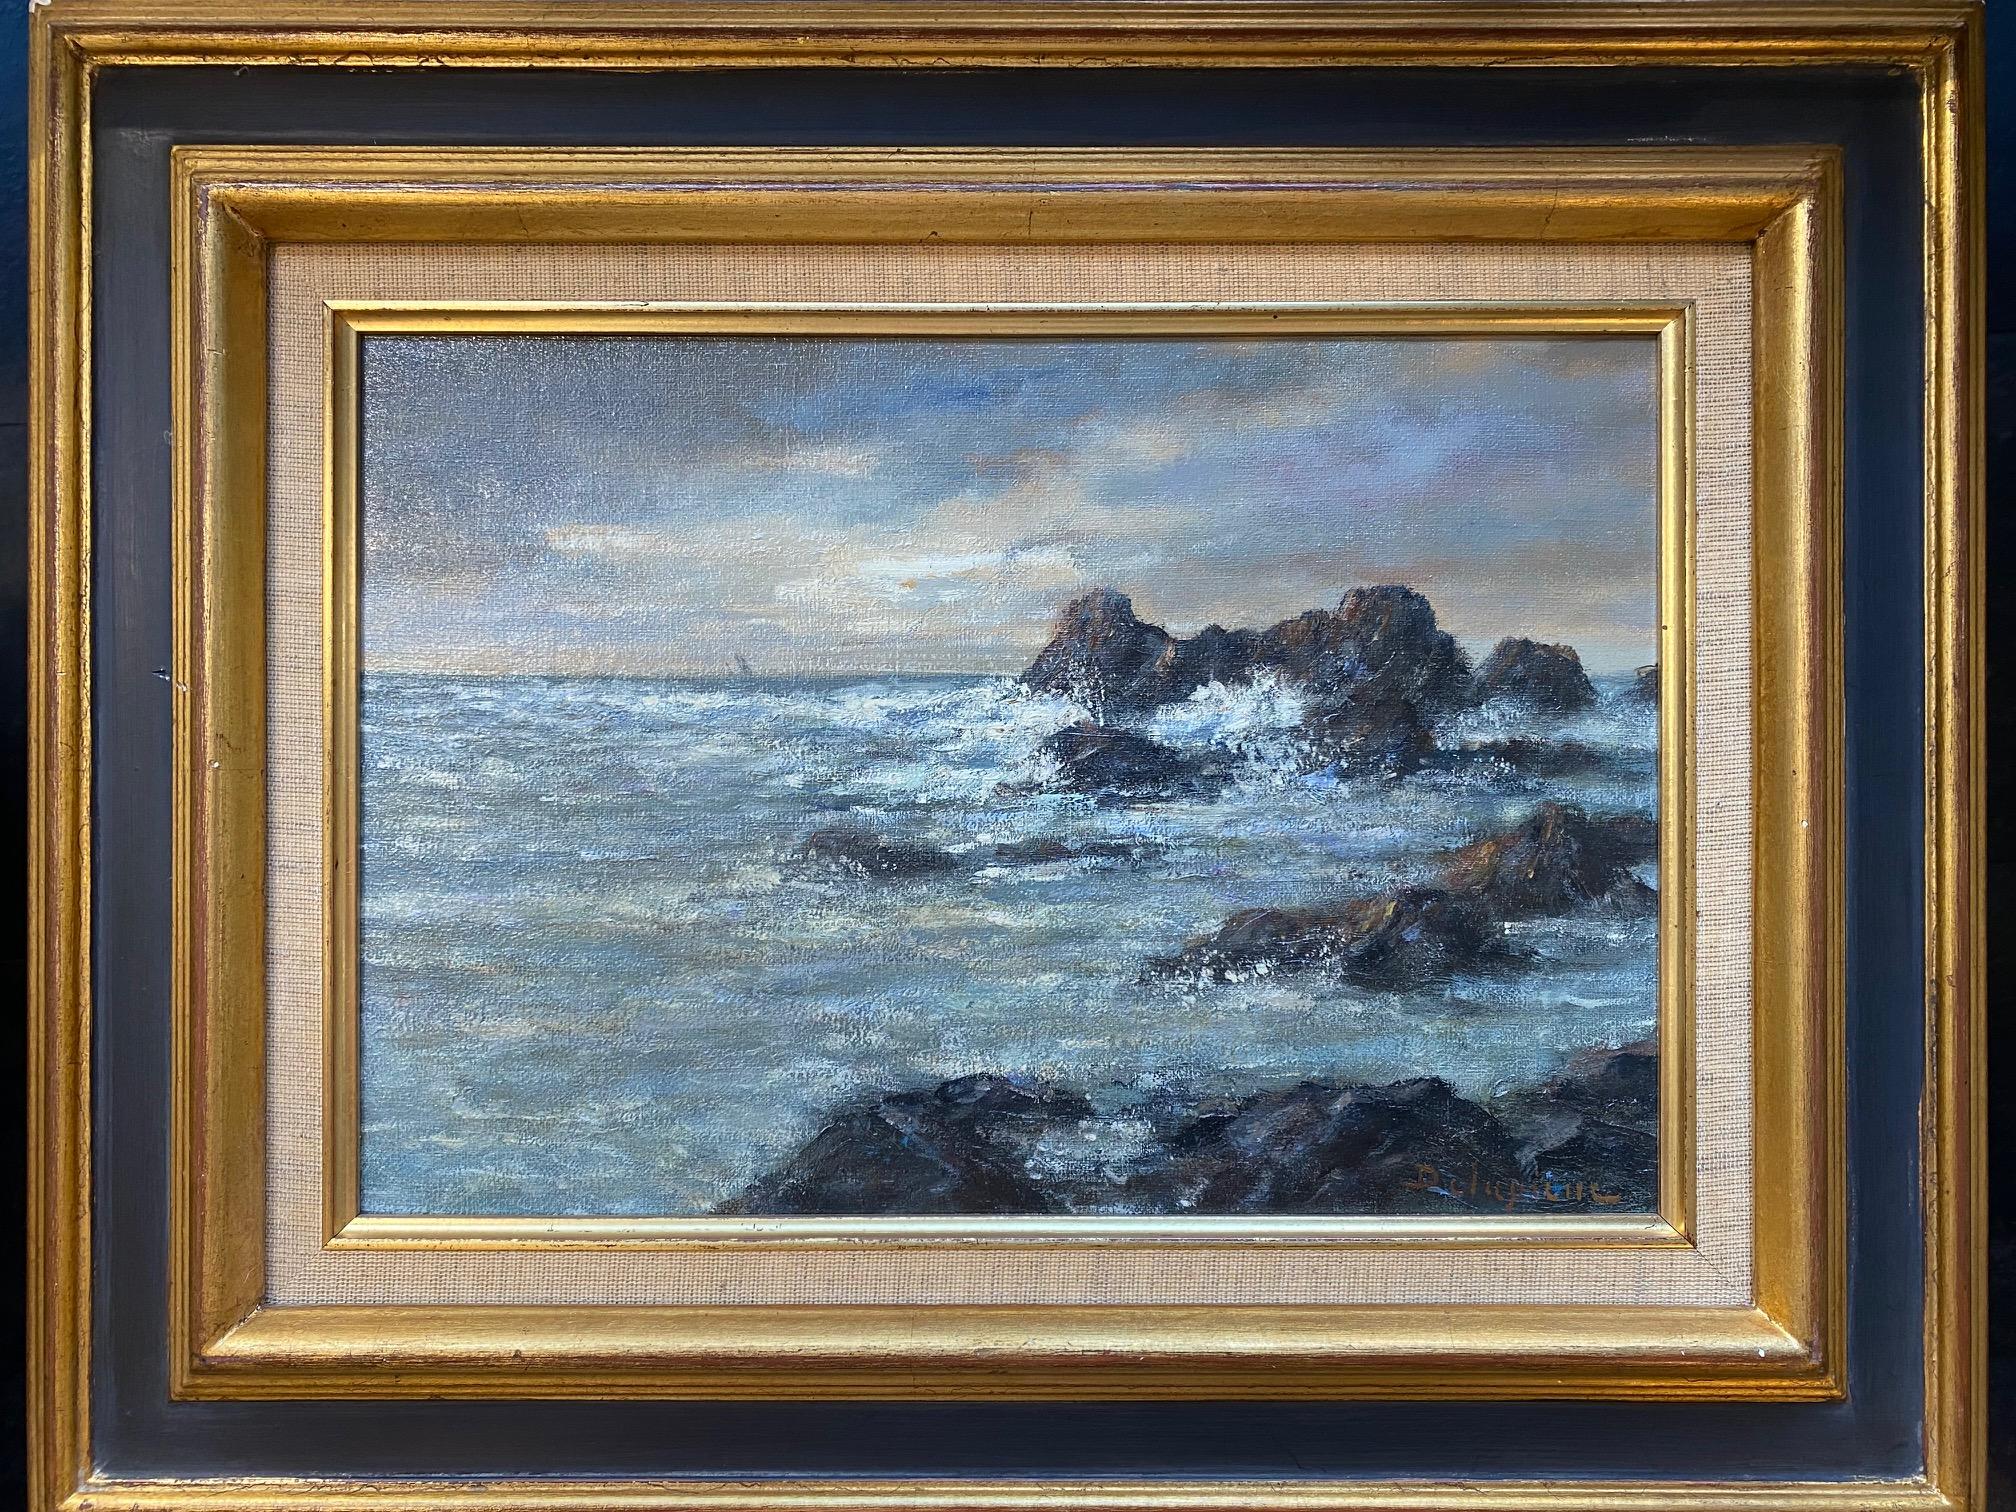 End of storm in Corsica von Roger Delapierre - Öl auf Leinwand 24x35 cm (Realismus), Painting, von roger delapierre 